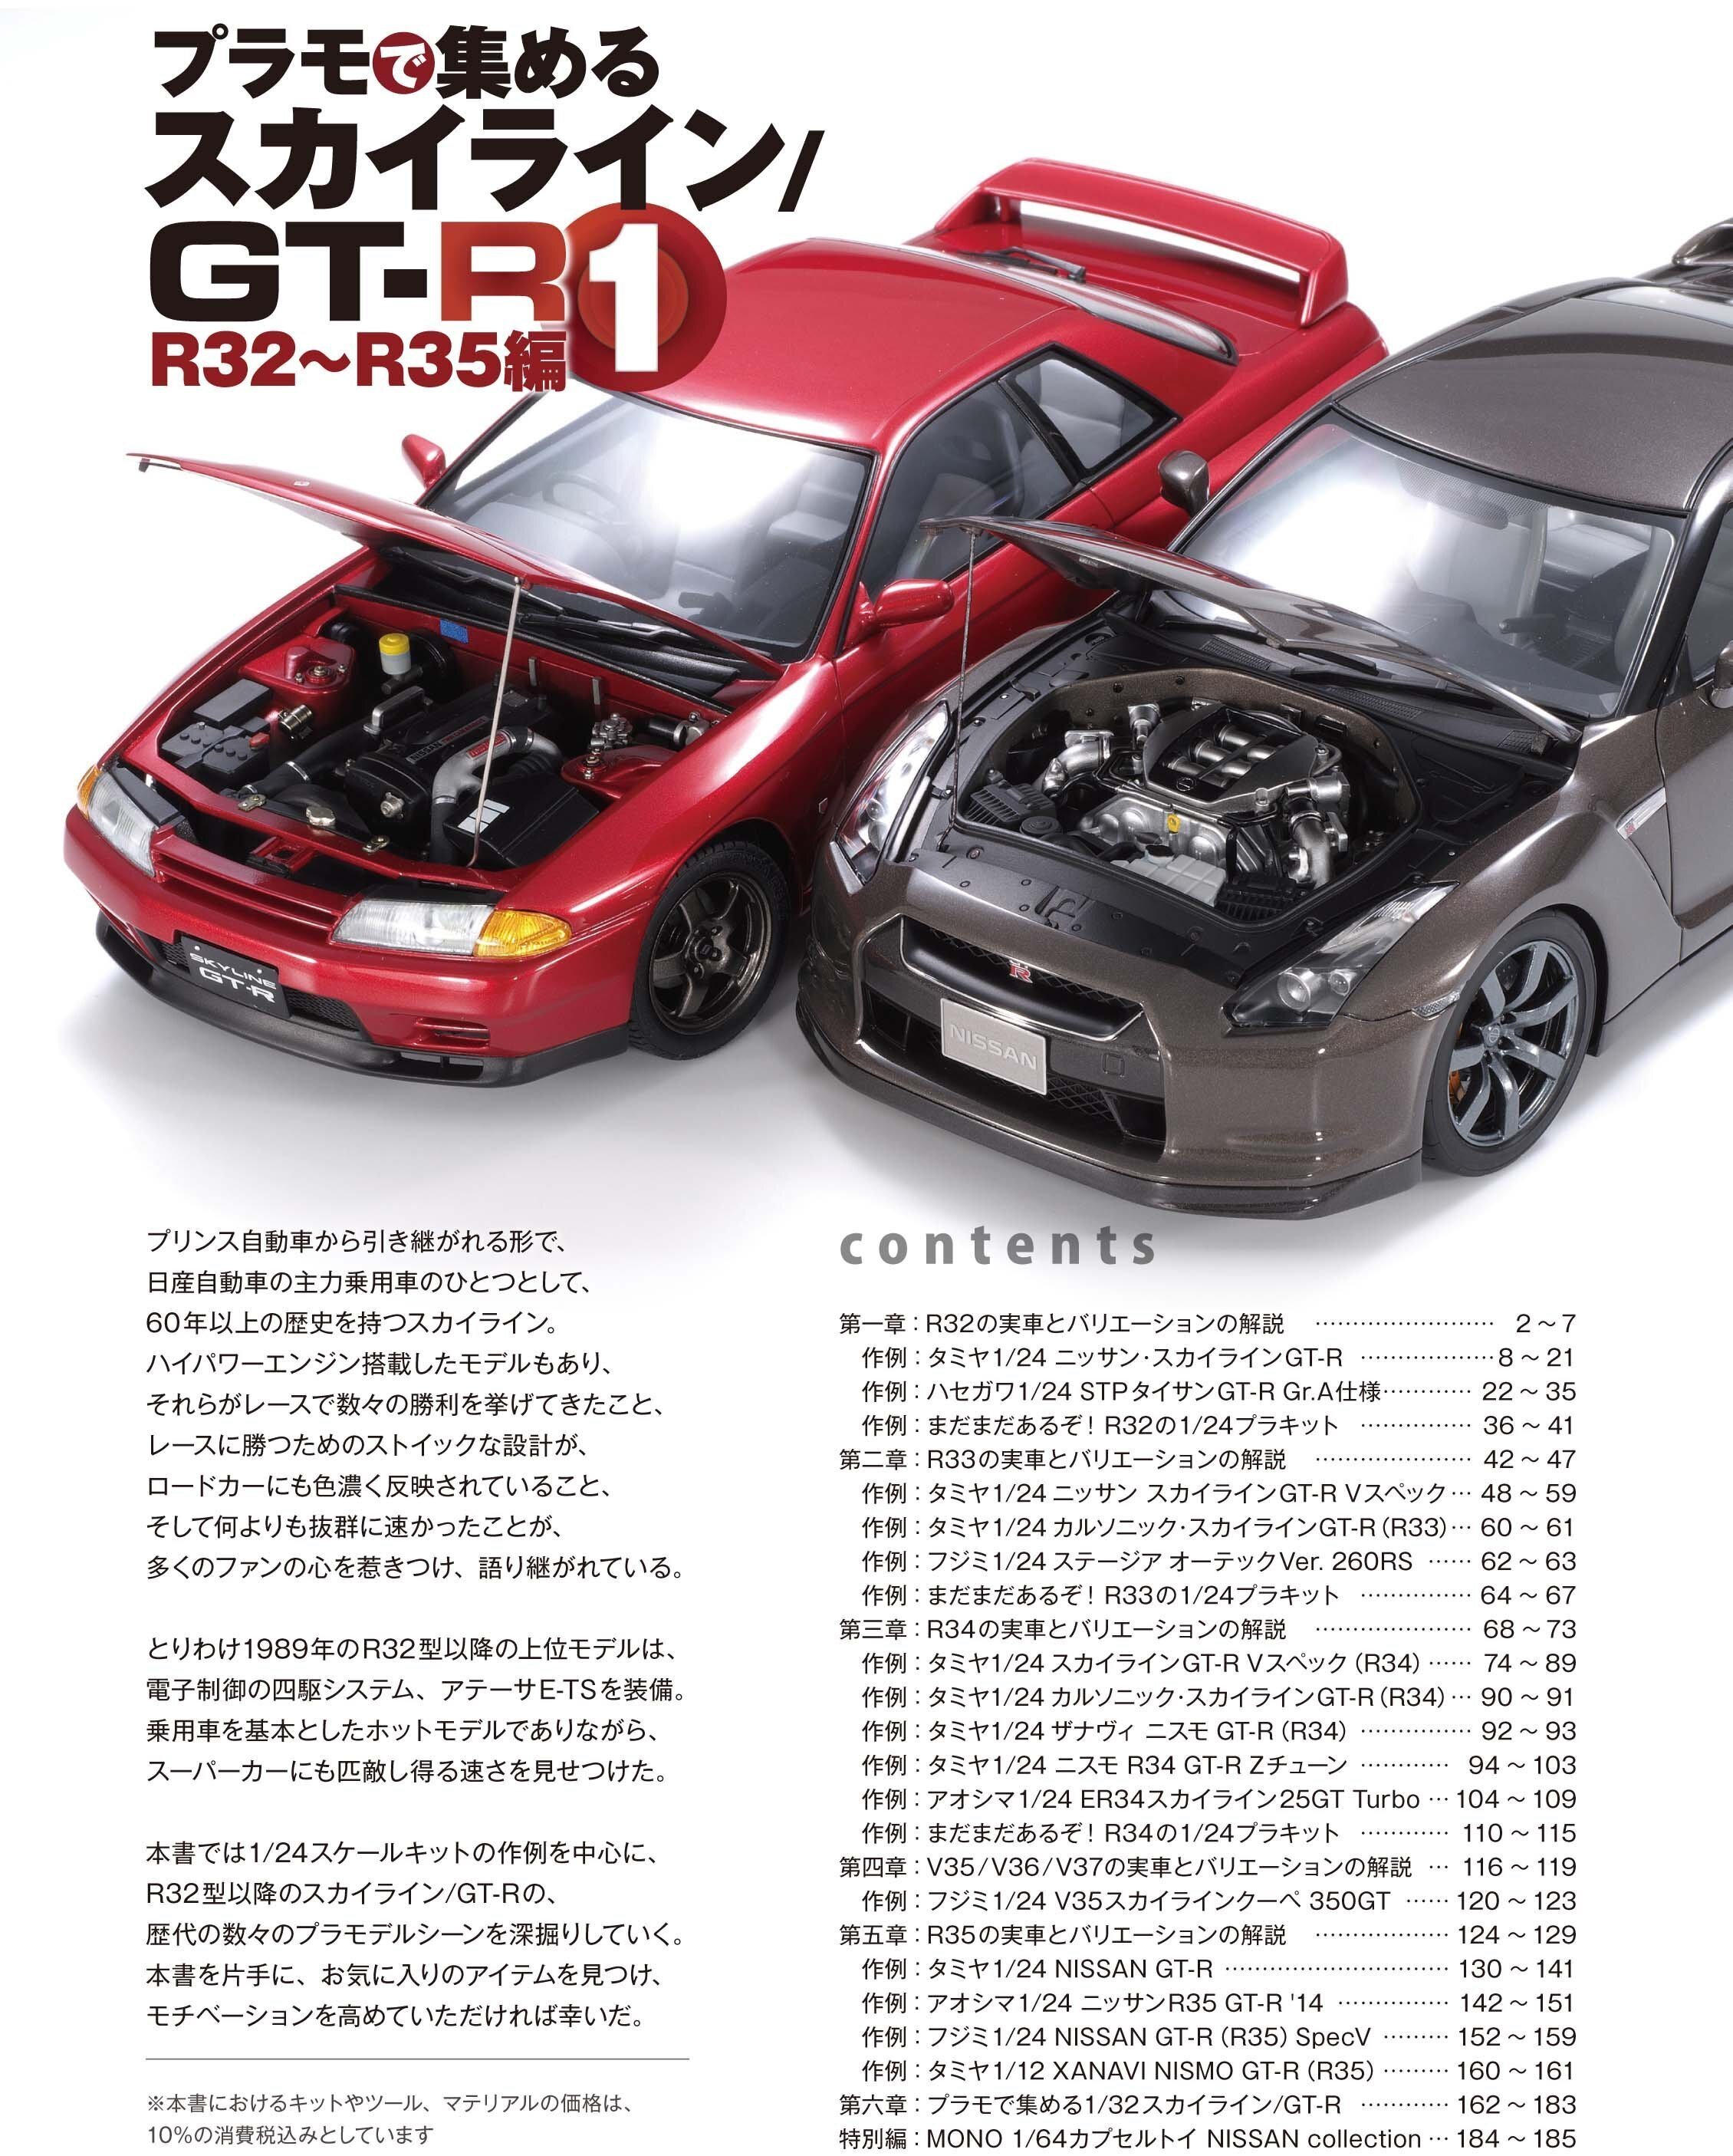 タミヤ スカイライン GT-R 1/24 プラモデル R32 R33 R34